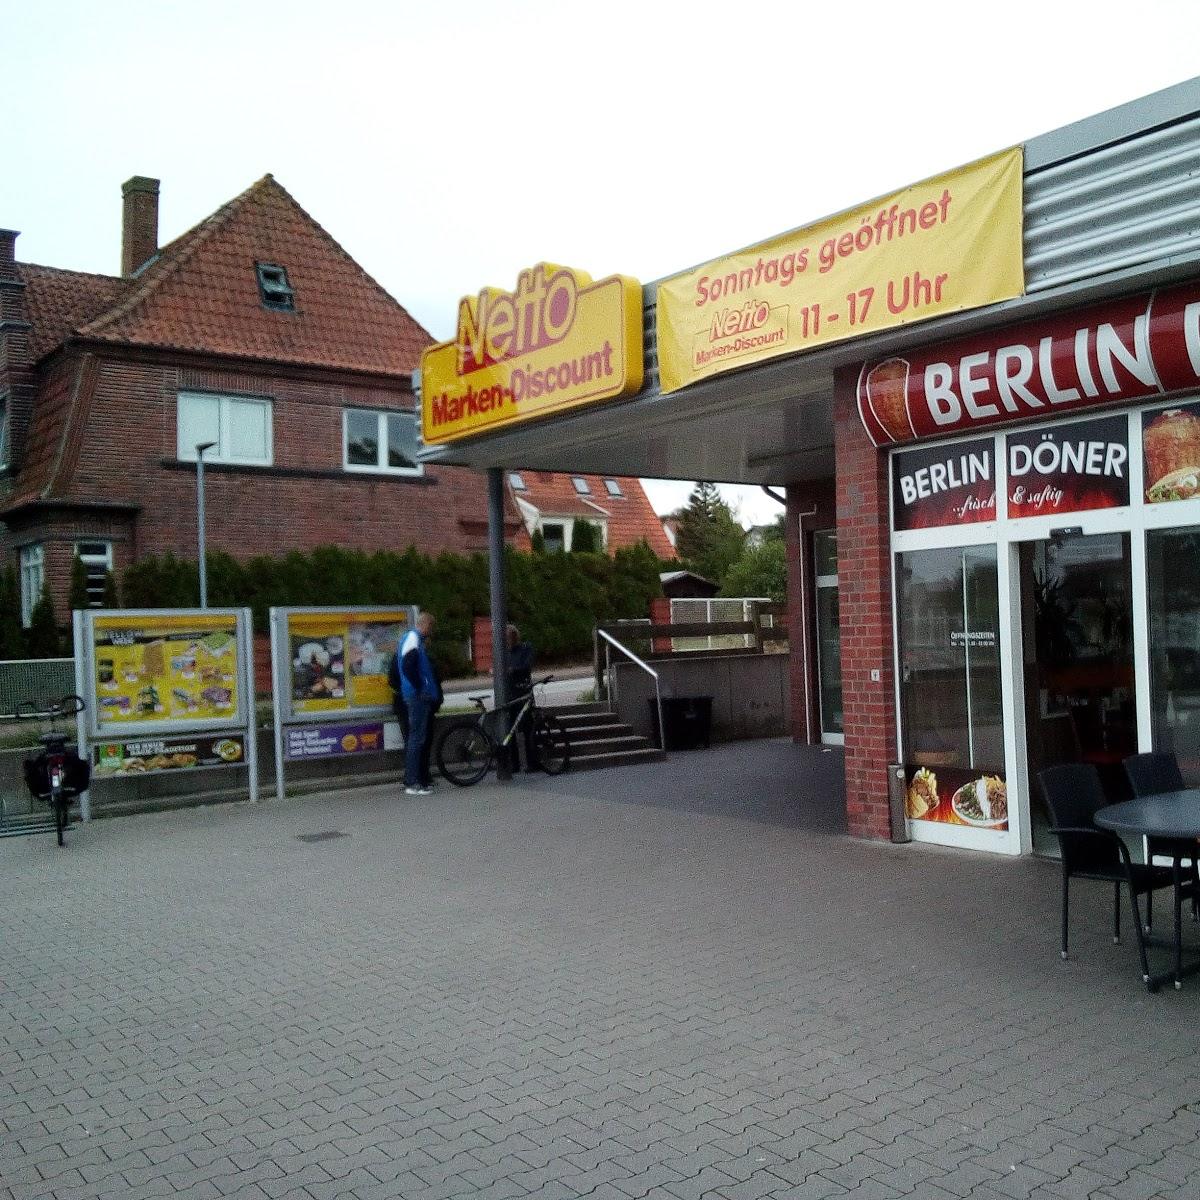 Restaurant "Berlin Döner" in Heiligenhafen